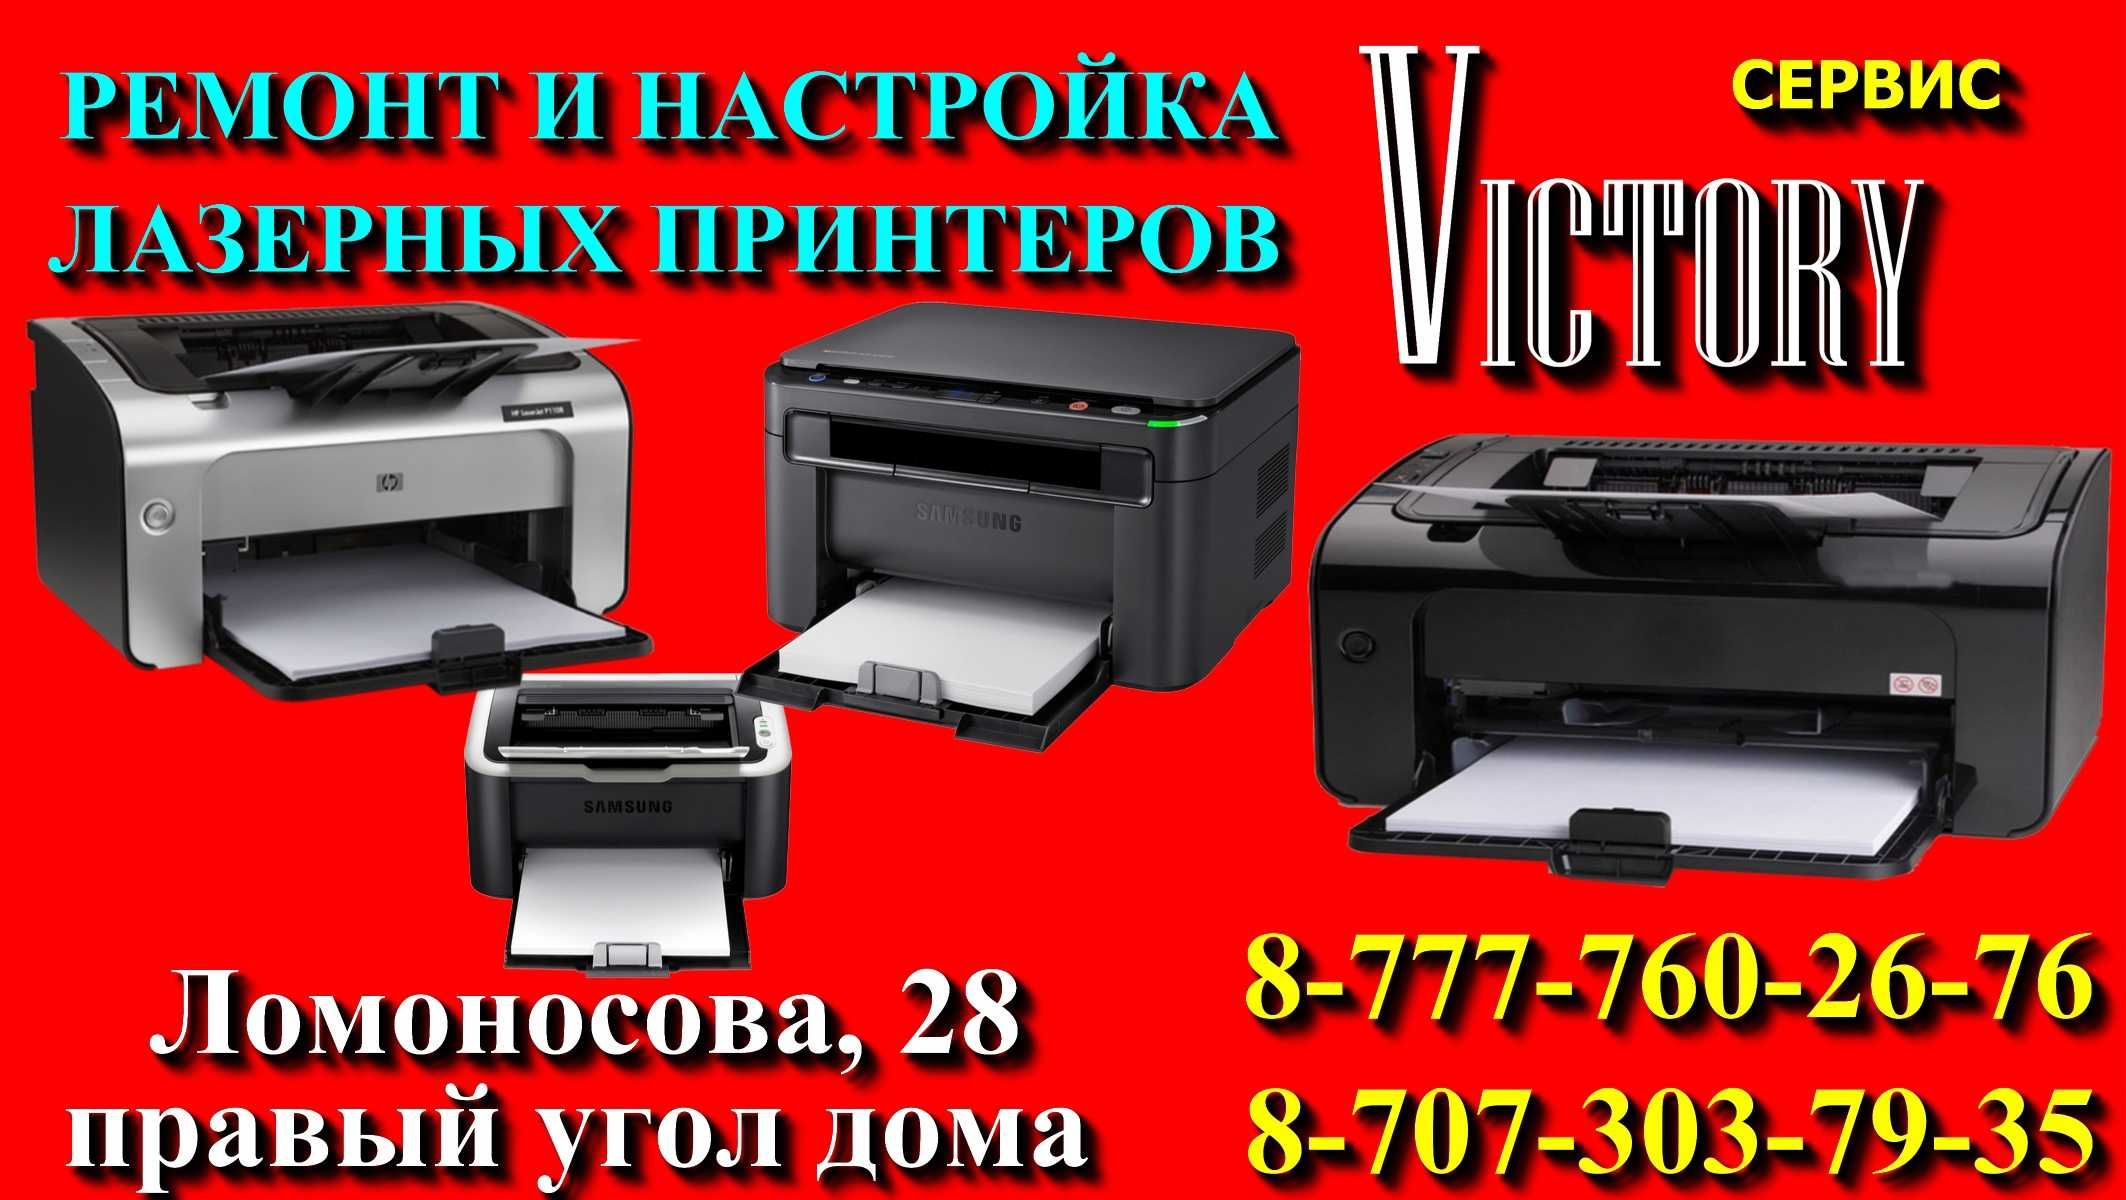 Сервис по ремонту принтеров "VICTORY" без выходных с 8-20 ч.